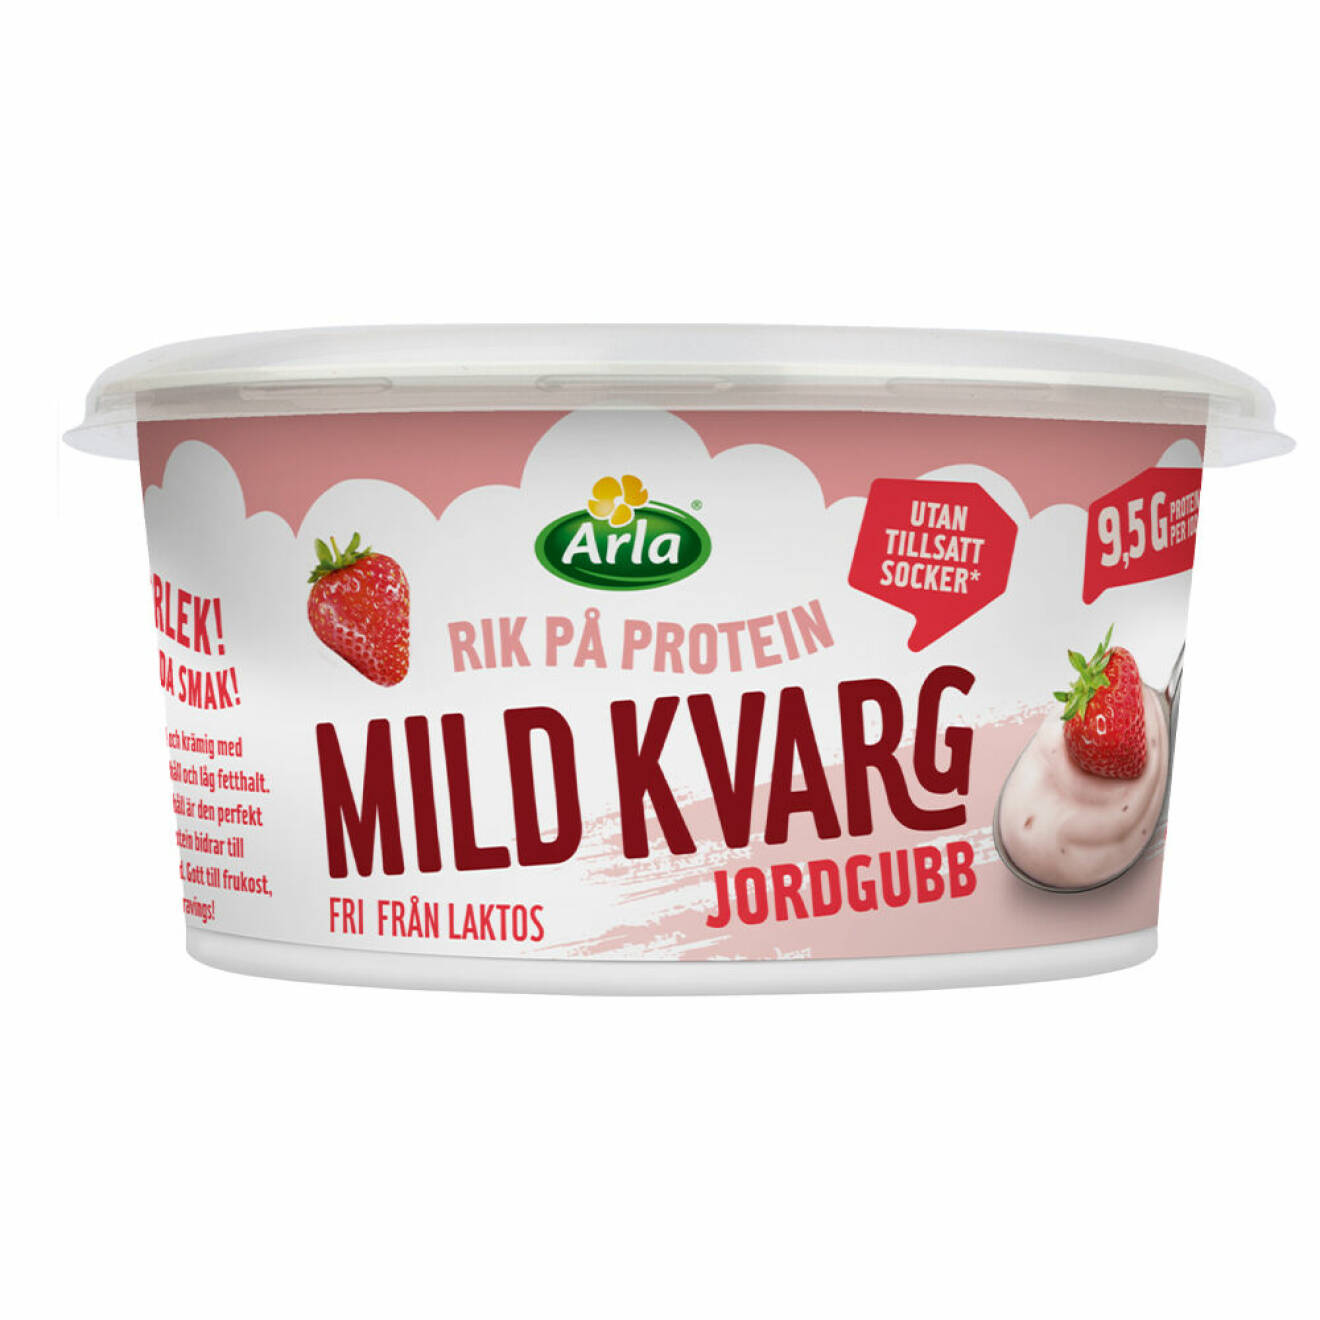 Arla Mild Kvarg 450 g vanilj och jordgubb finns i butik från vecka 36.